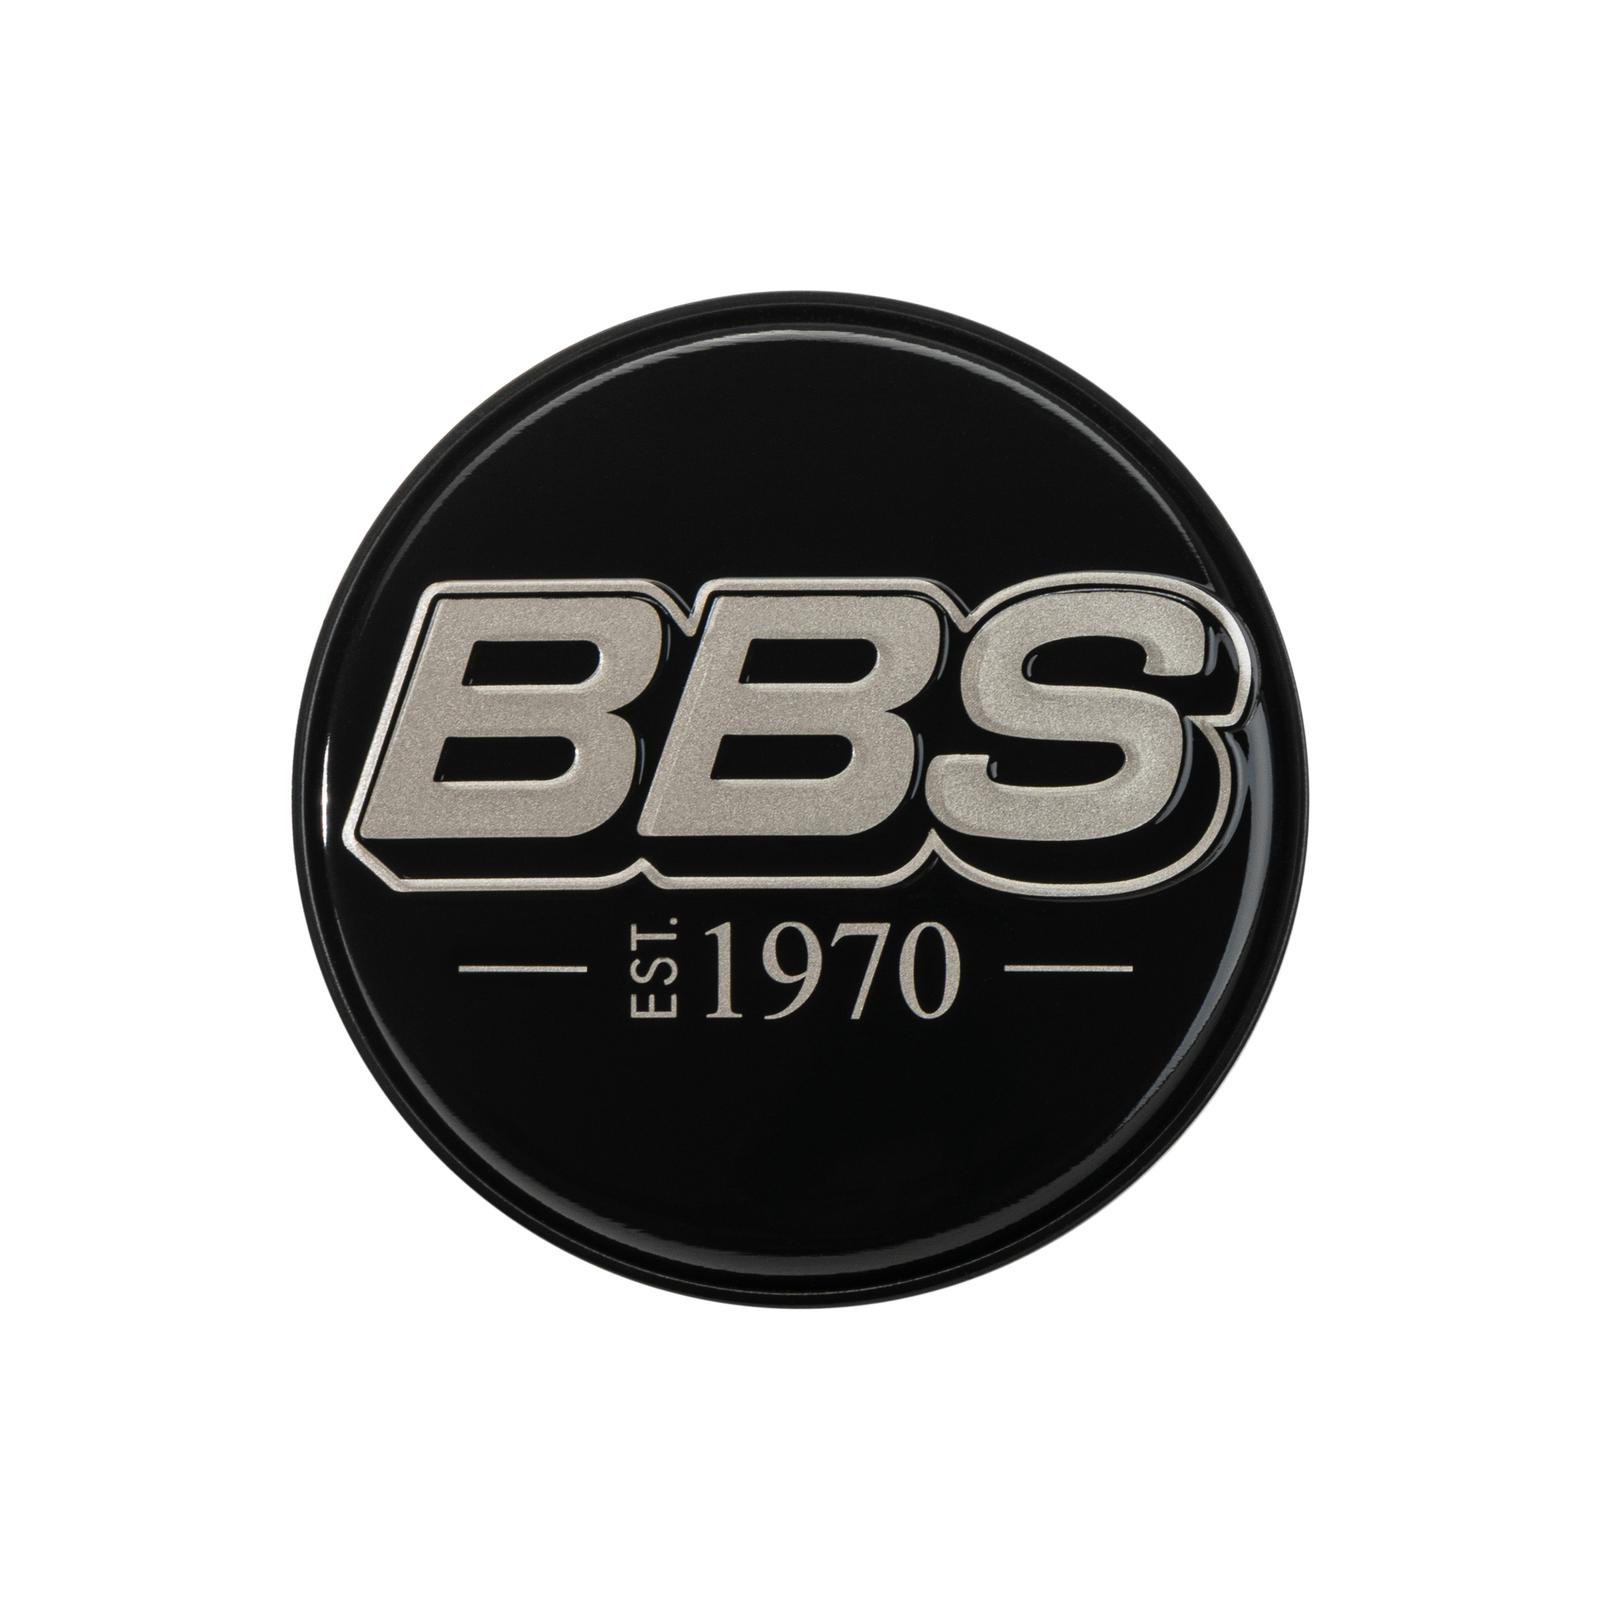 BBS 2D Nabendeckel Geprägt Schwarz mit Logo Indigo Blue Set (4 Stück)